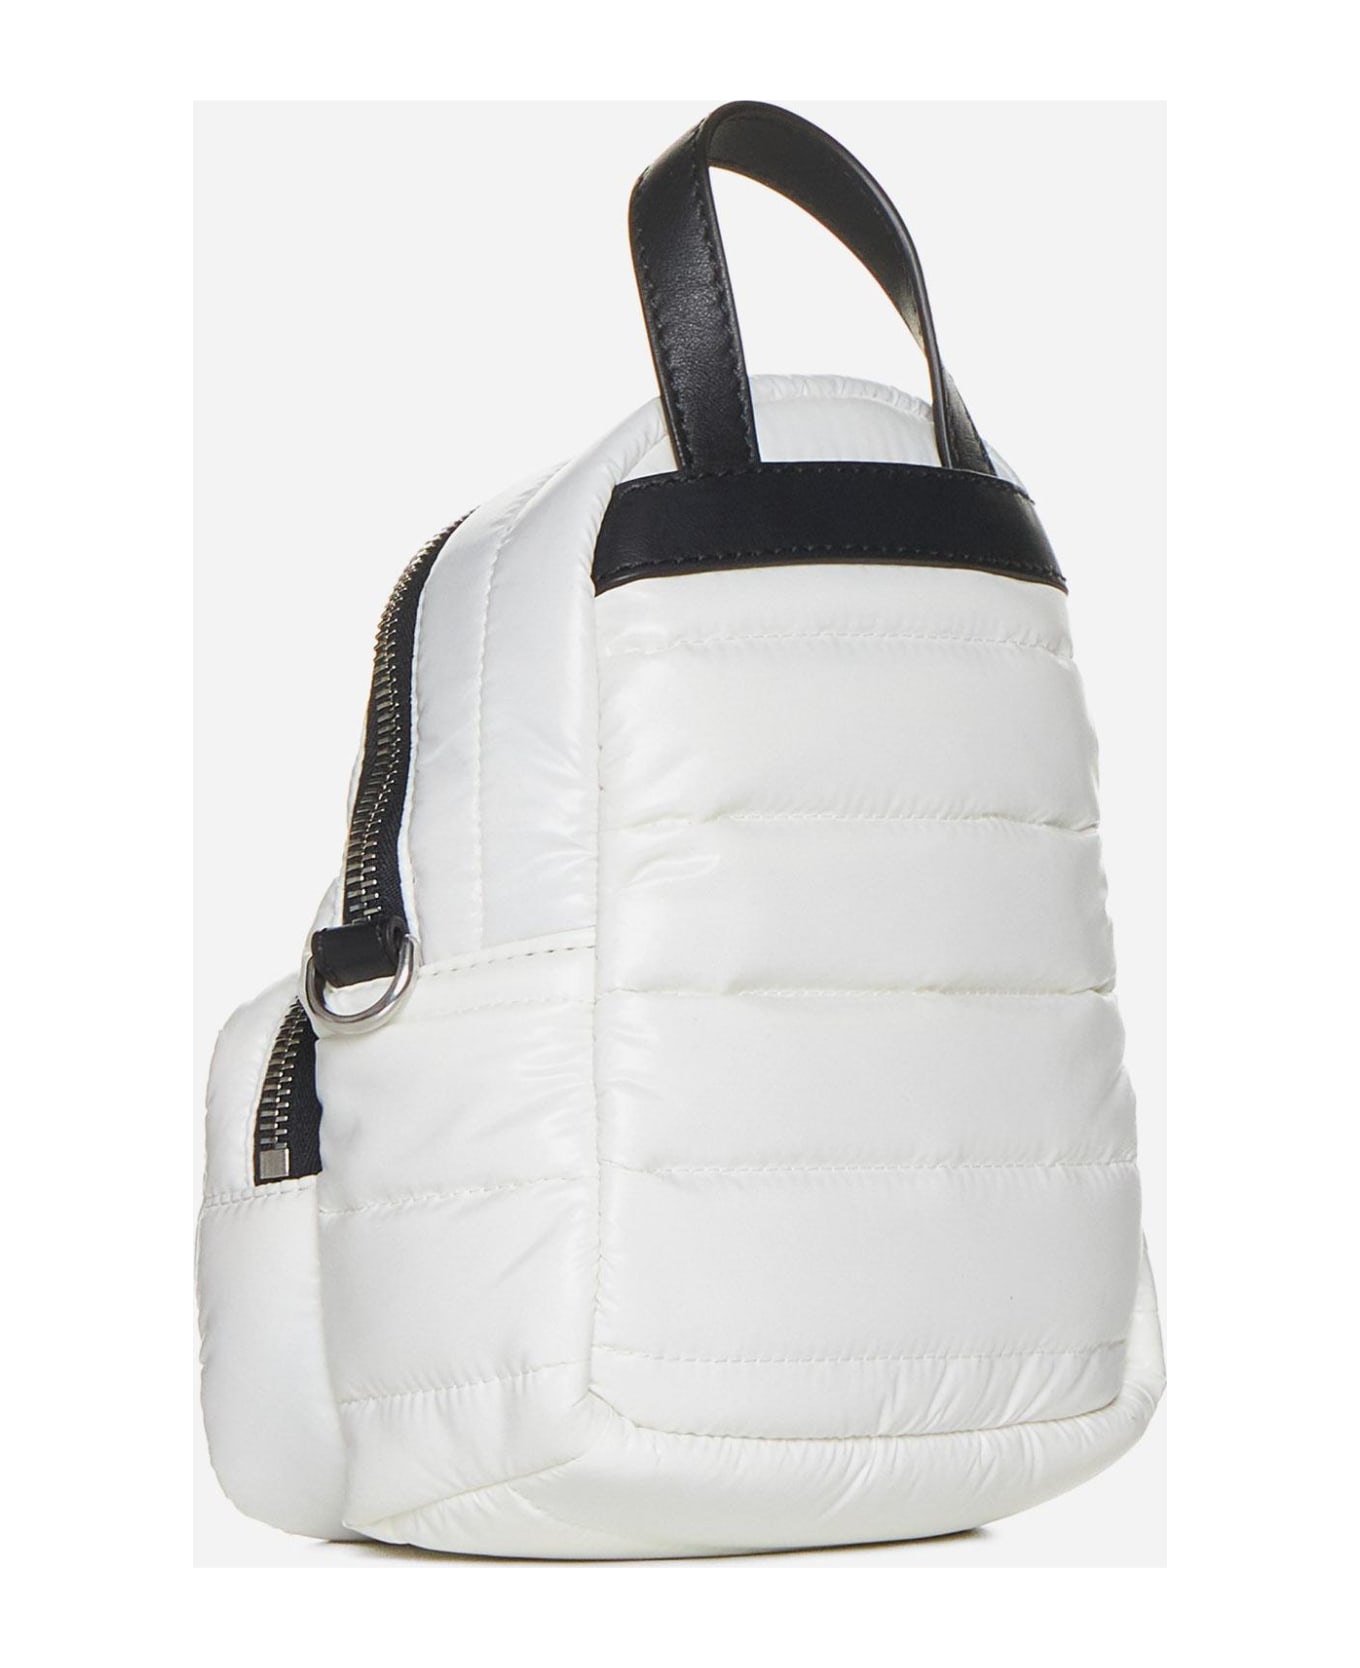 Moncler Kilia Nylon Small Crossbody Backpack Bag - Beige バックパック